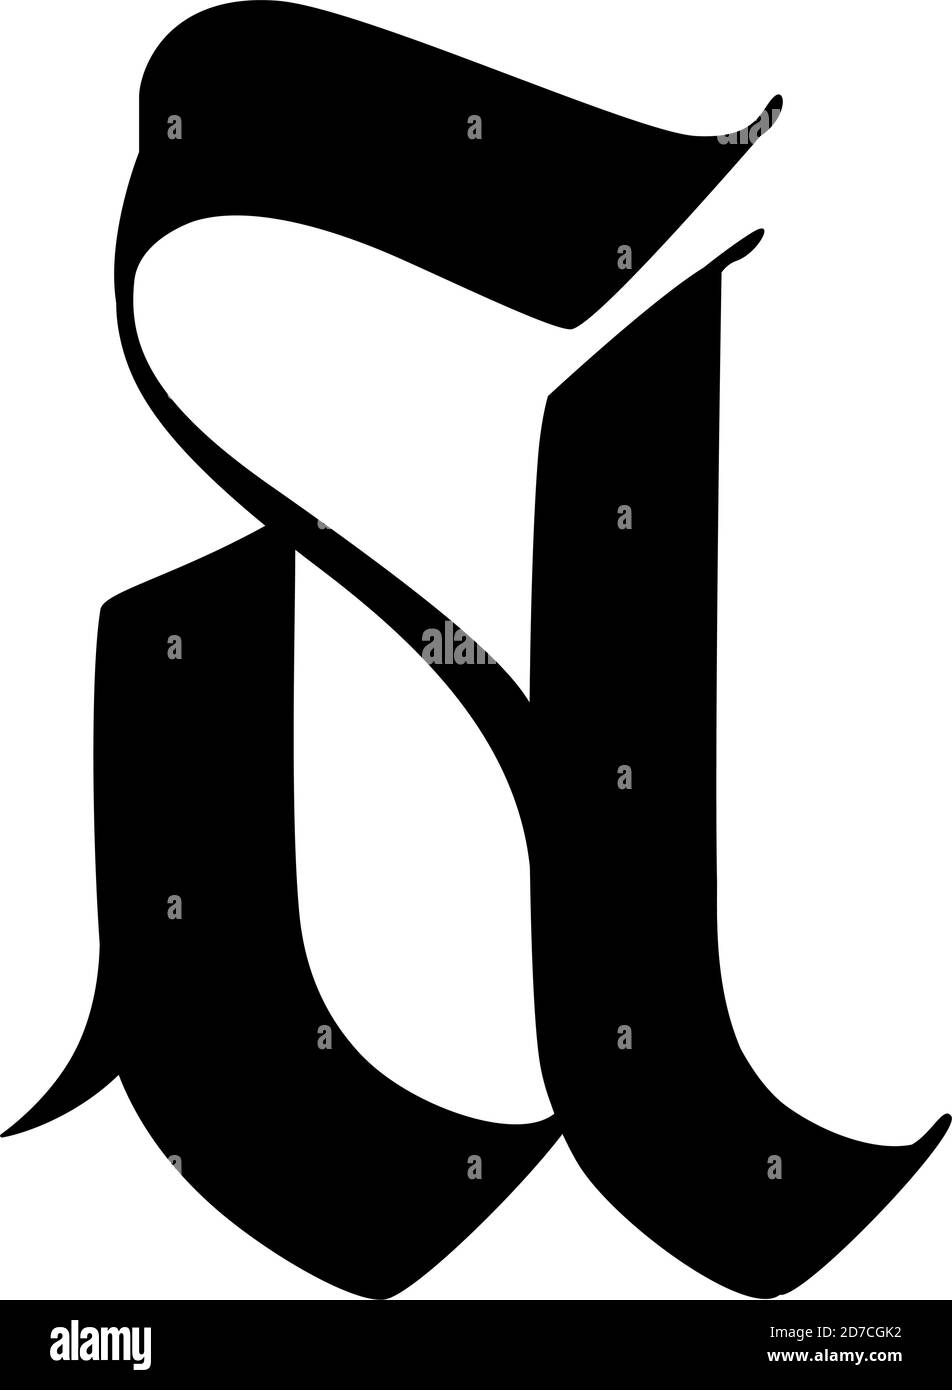 Lettre A, dans le style gothique. Vecteur. L'alphabet. Le symbole est isolé sur un fond doré. De la calligraphie et de lettrage. Lettre en latin médiéval. Logo Illustration de Vecteur